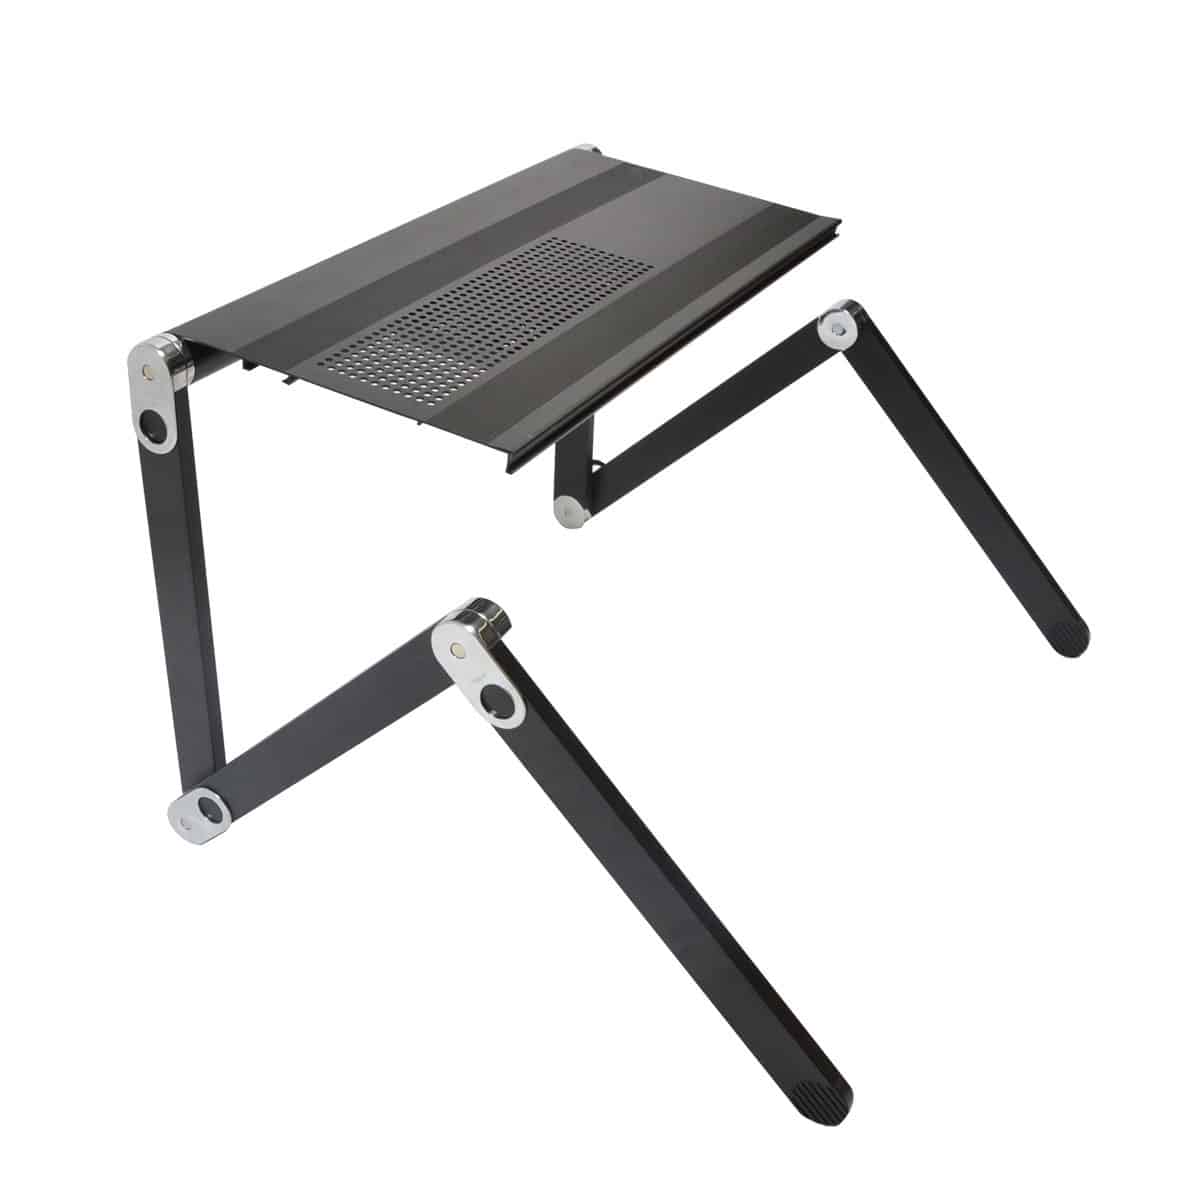 Thanko Super Gorone Desk Versatile Lapton Table